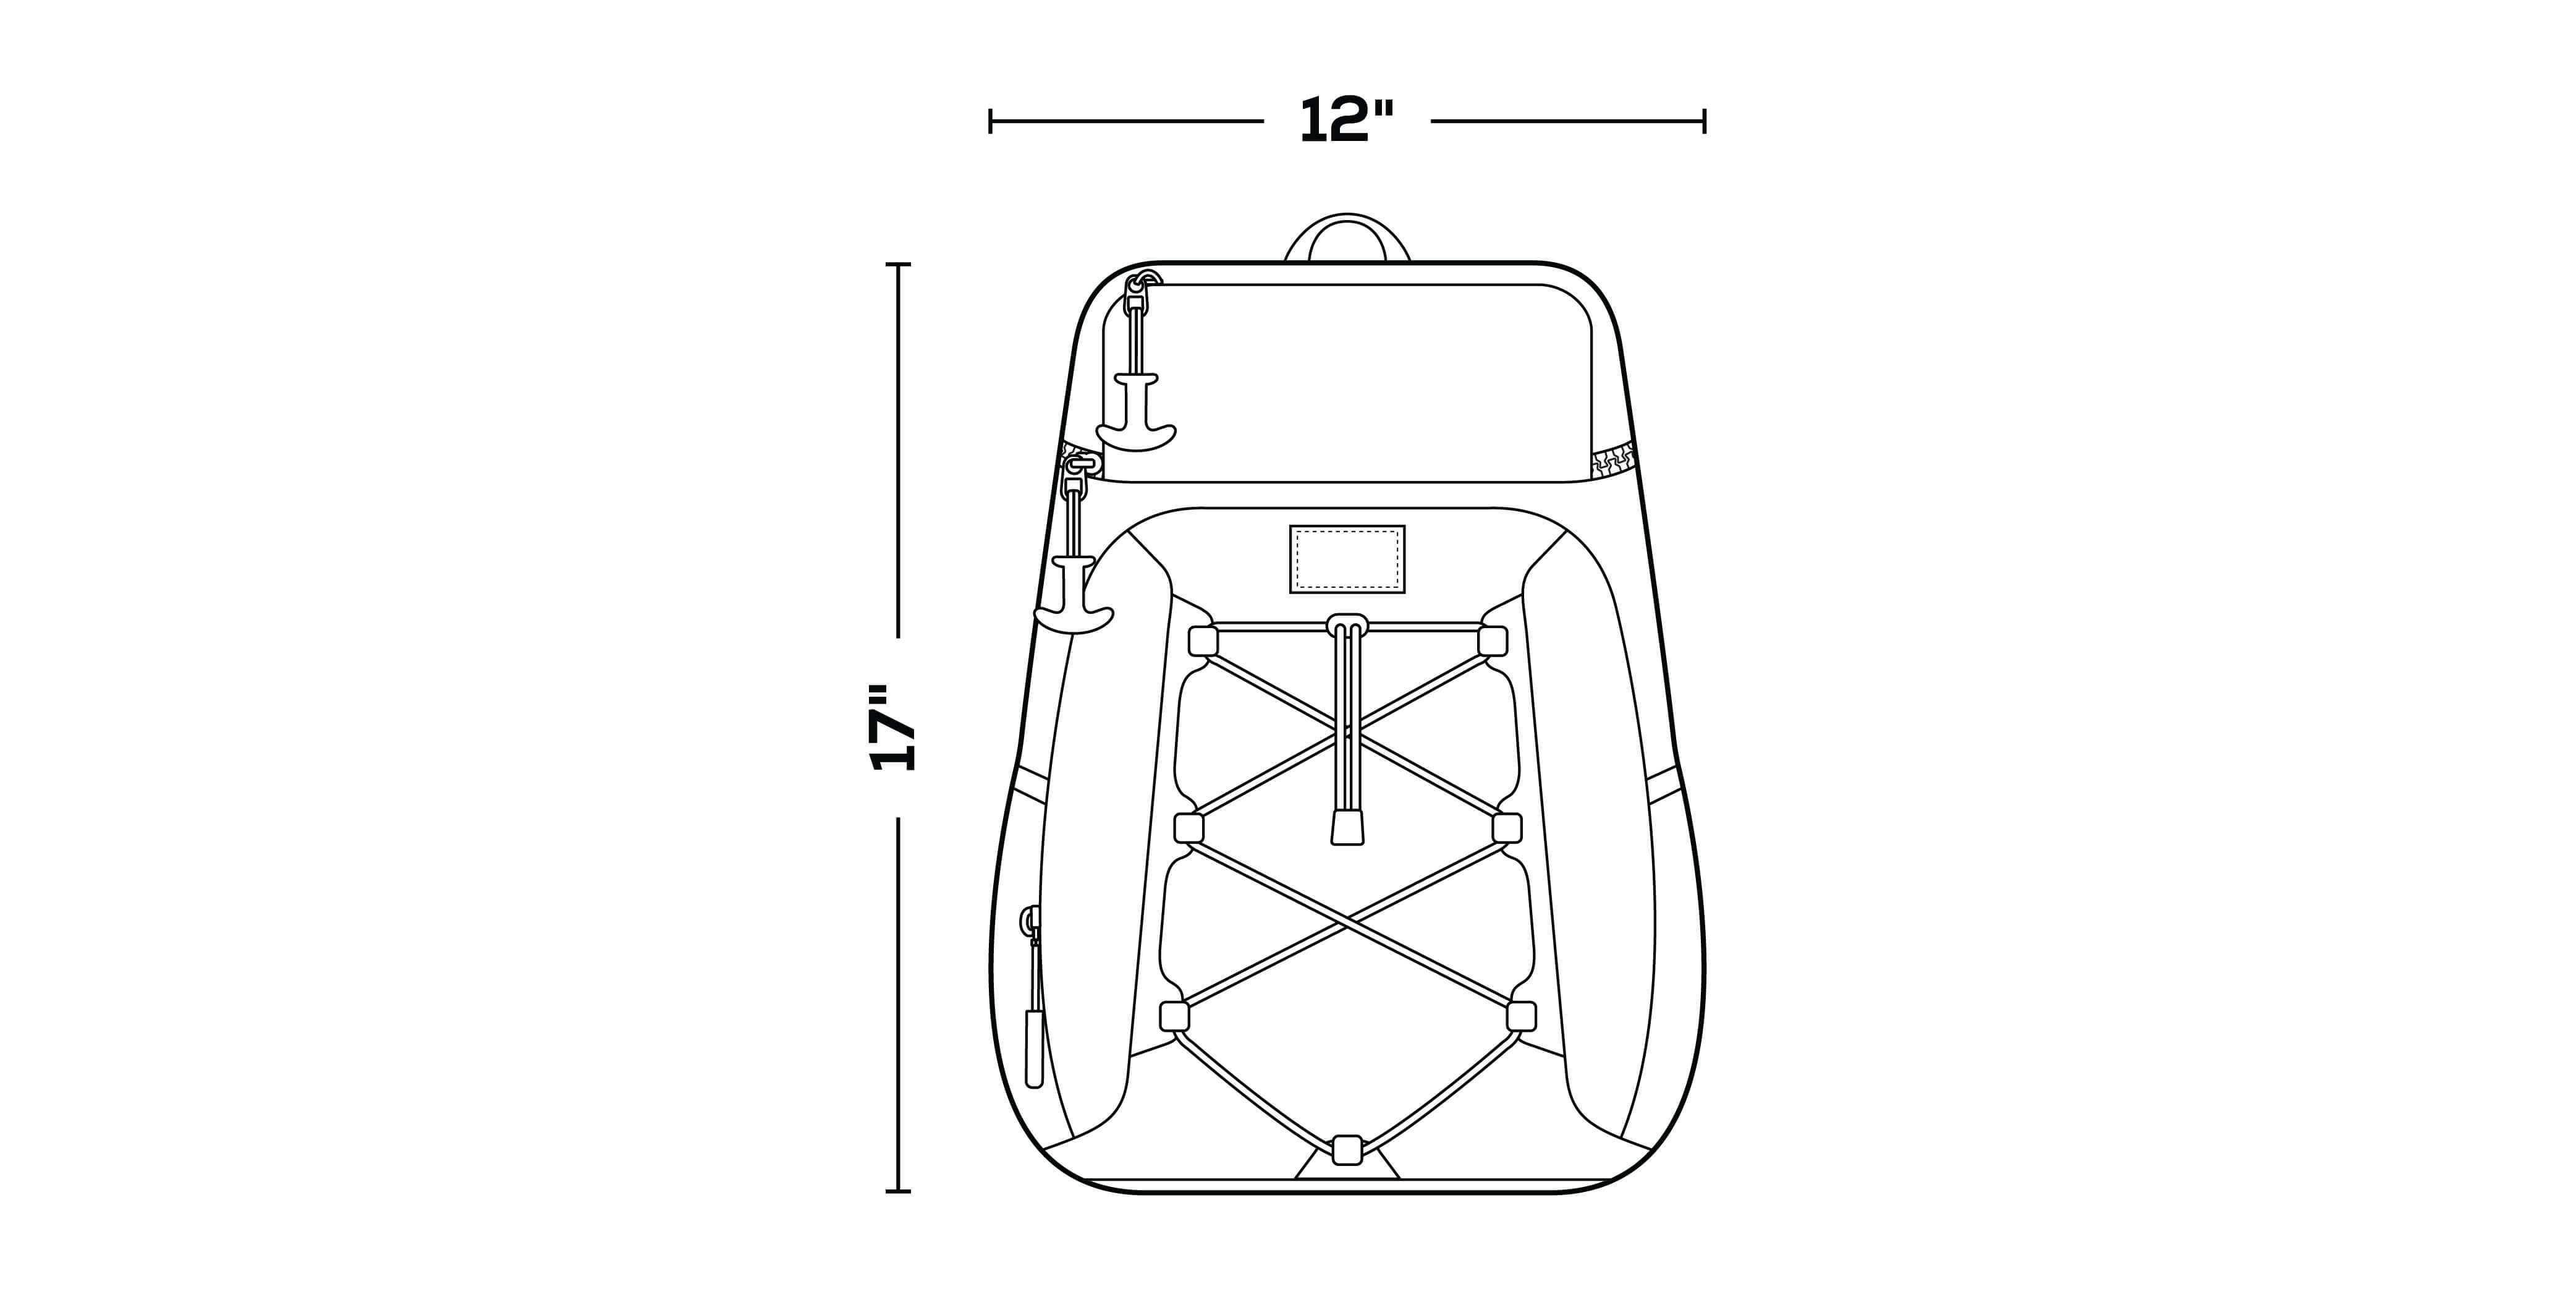 Maxcold Evergreen Hardtop Backpack – Custom Branding